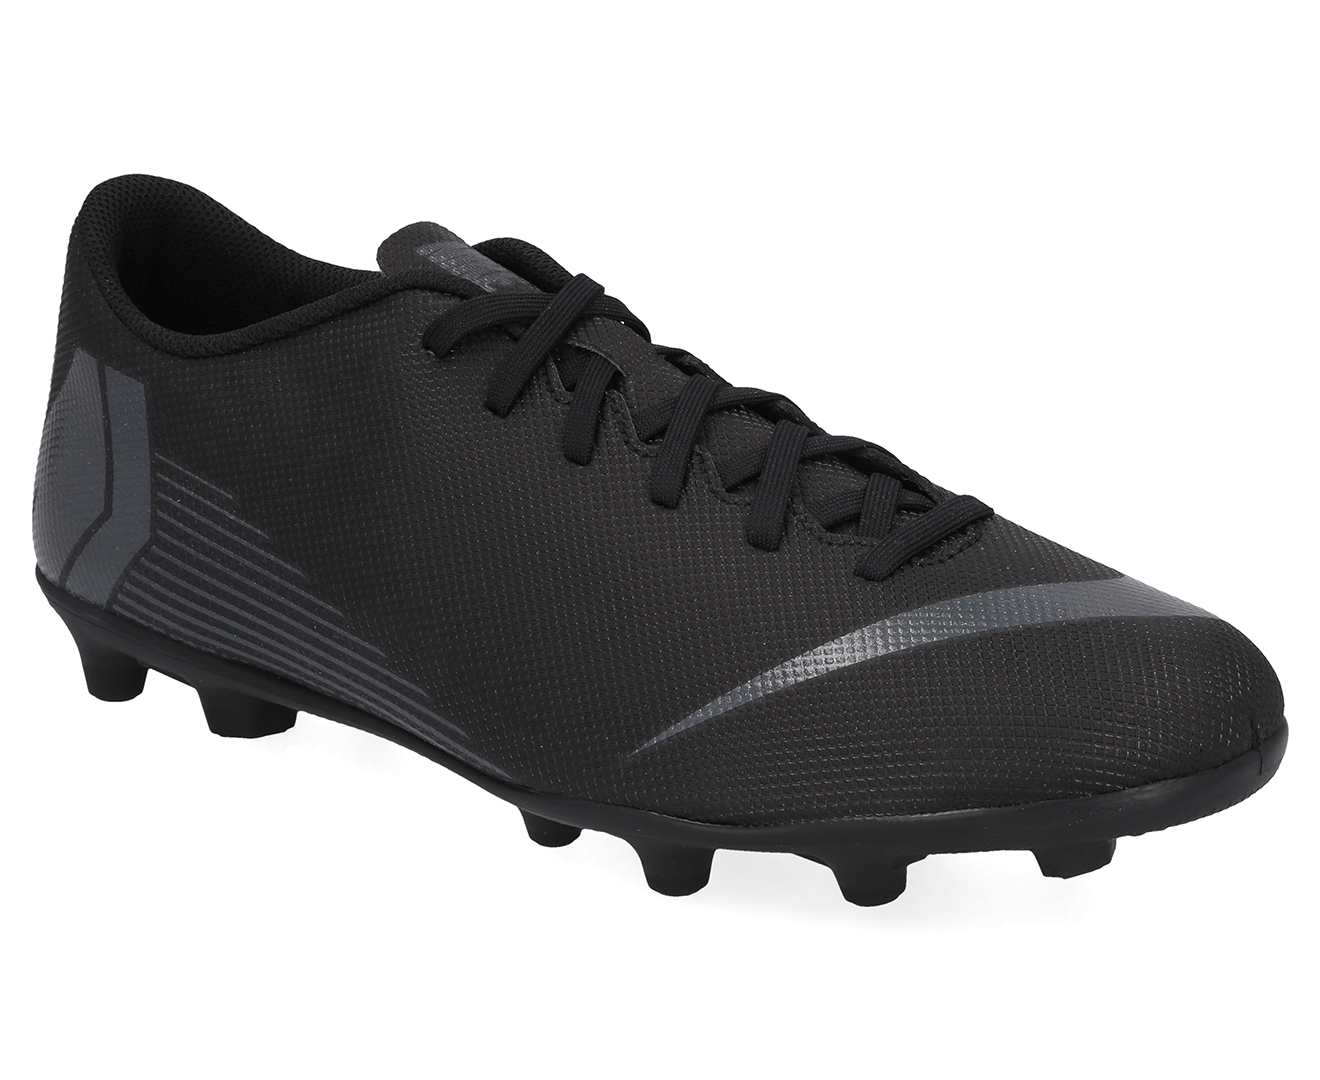 Nike Men's Vapor 12 FG/MG Boot - Black/Black | Catch.com.au